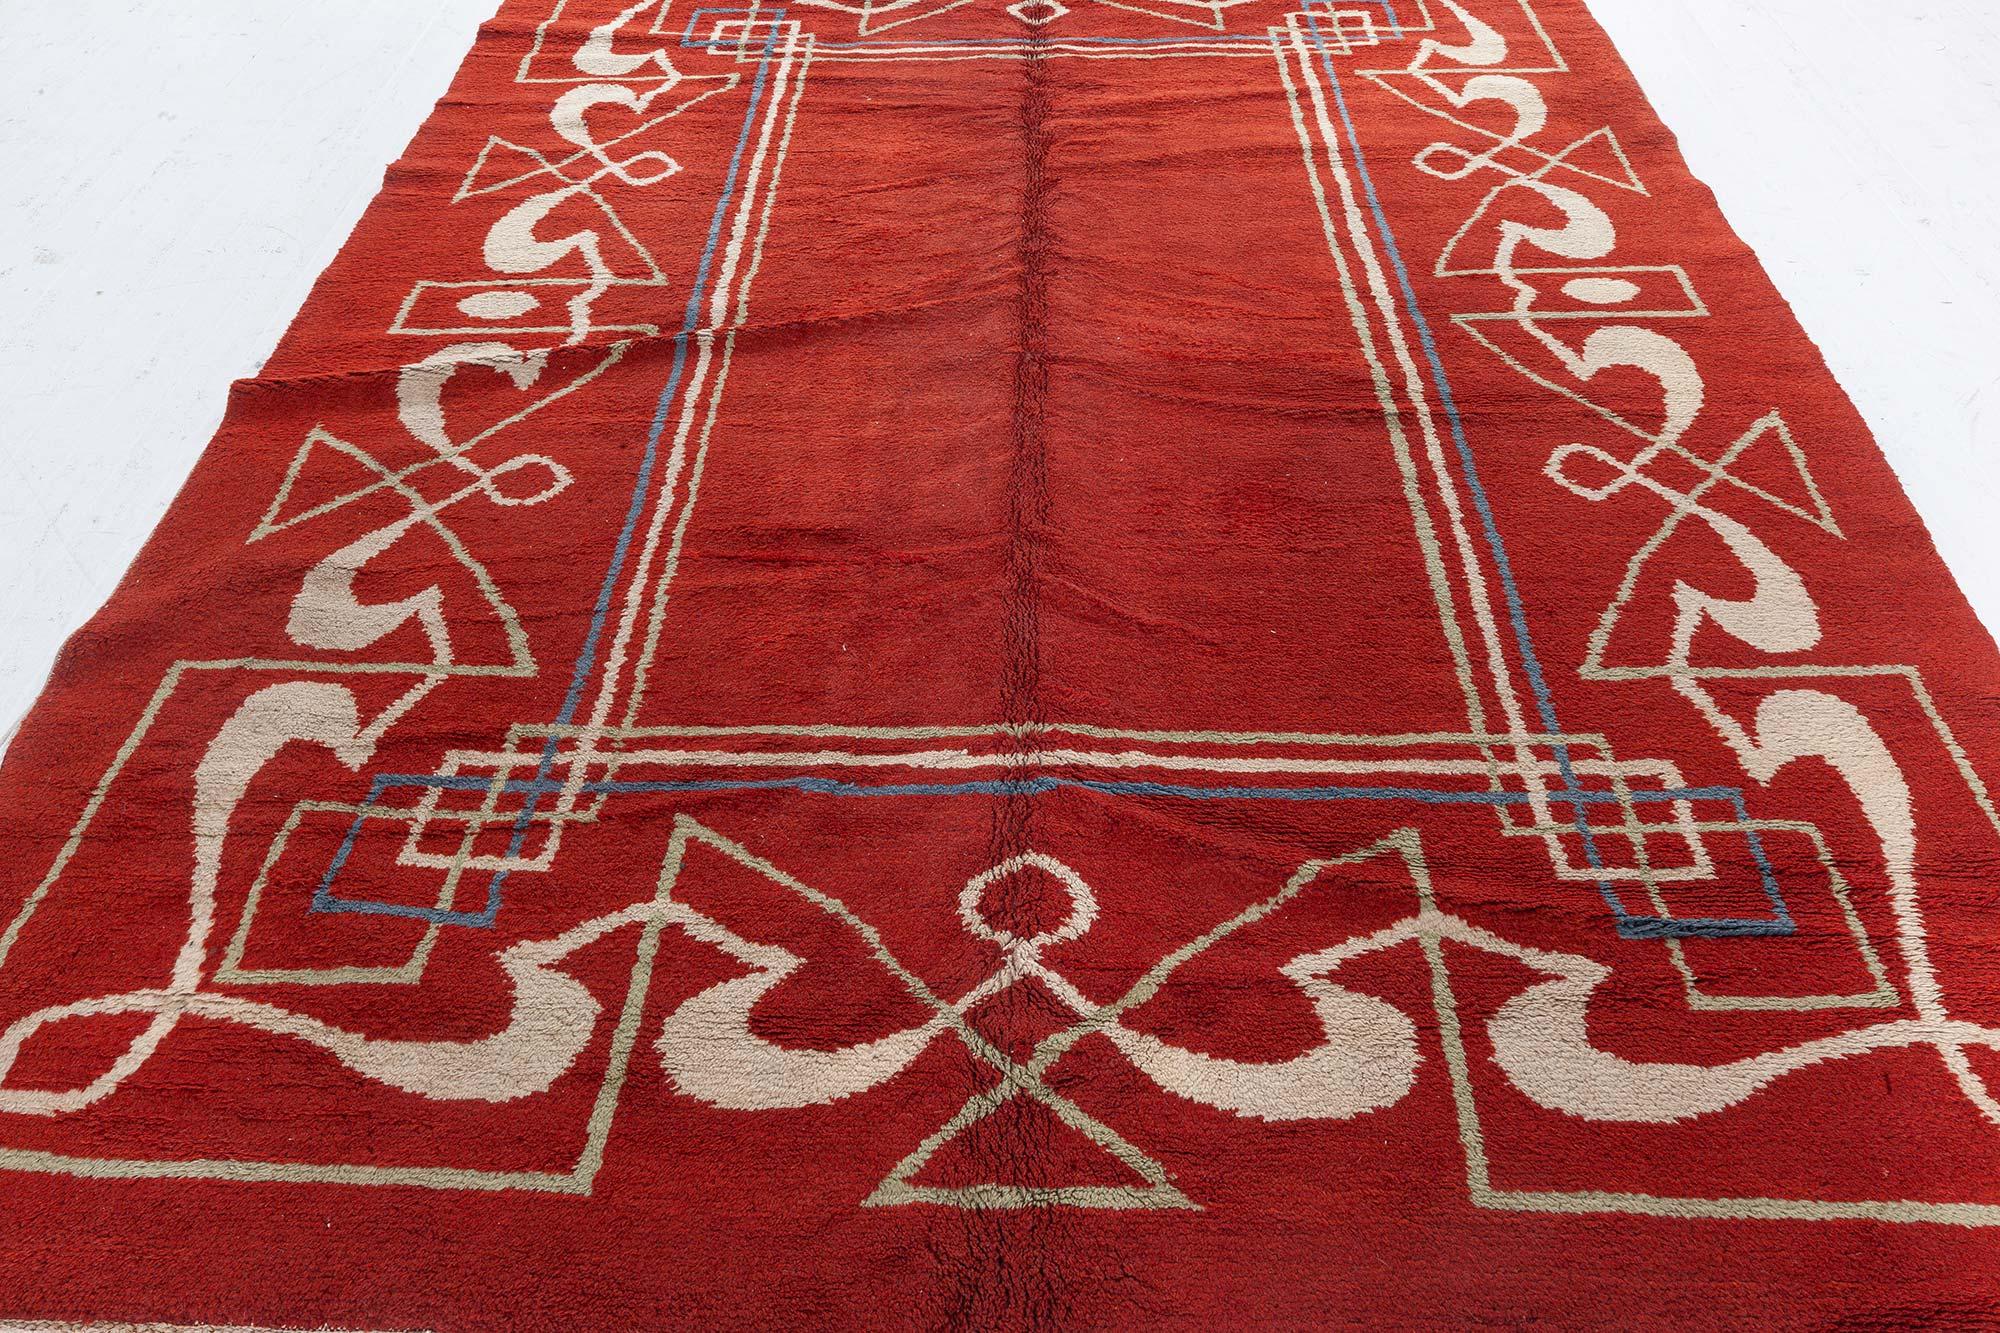 Einzigartiger Art Deco Teppich aus roter, brauner Wolle, handgefertigt
Größe: 8'0